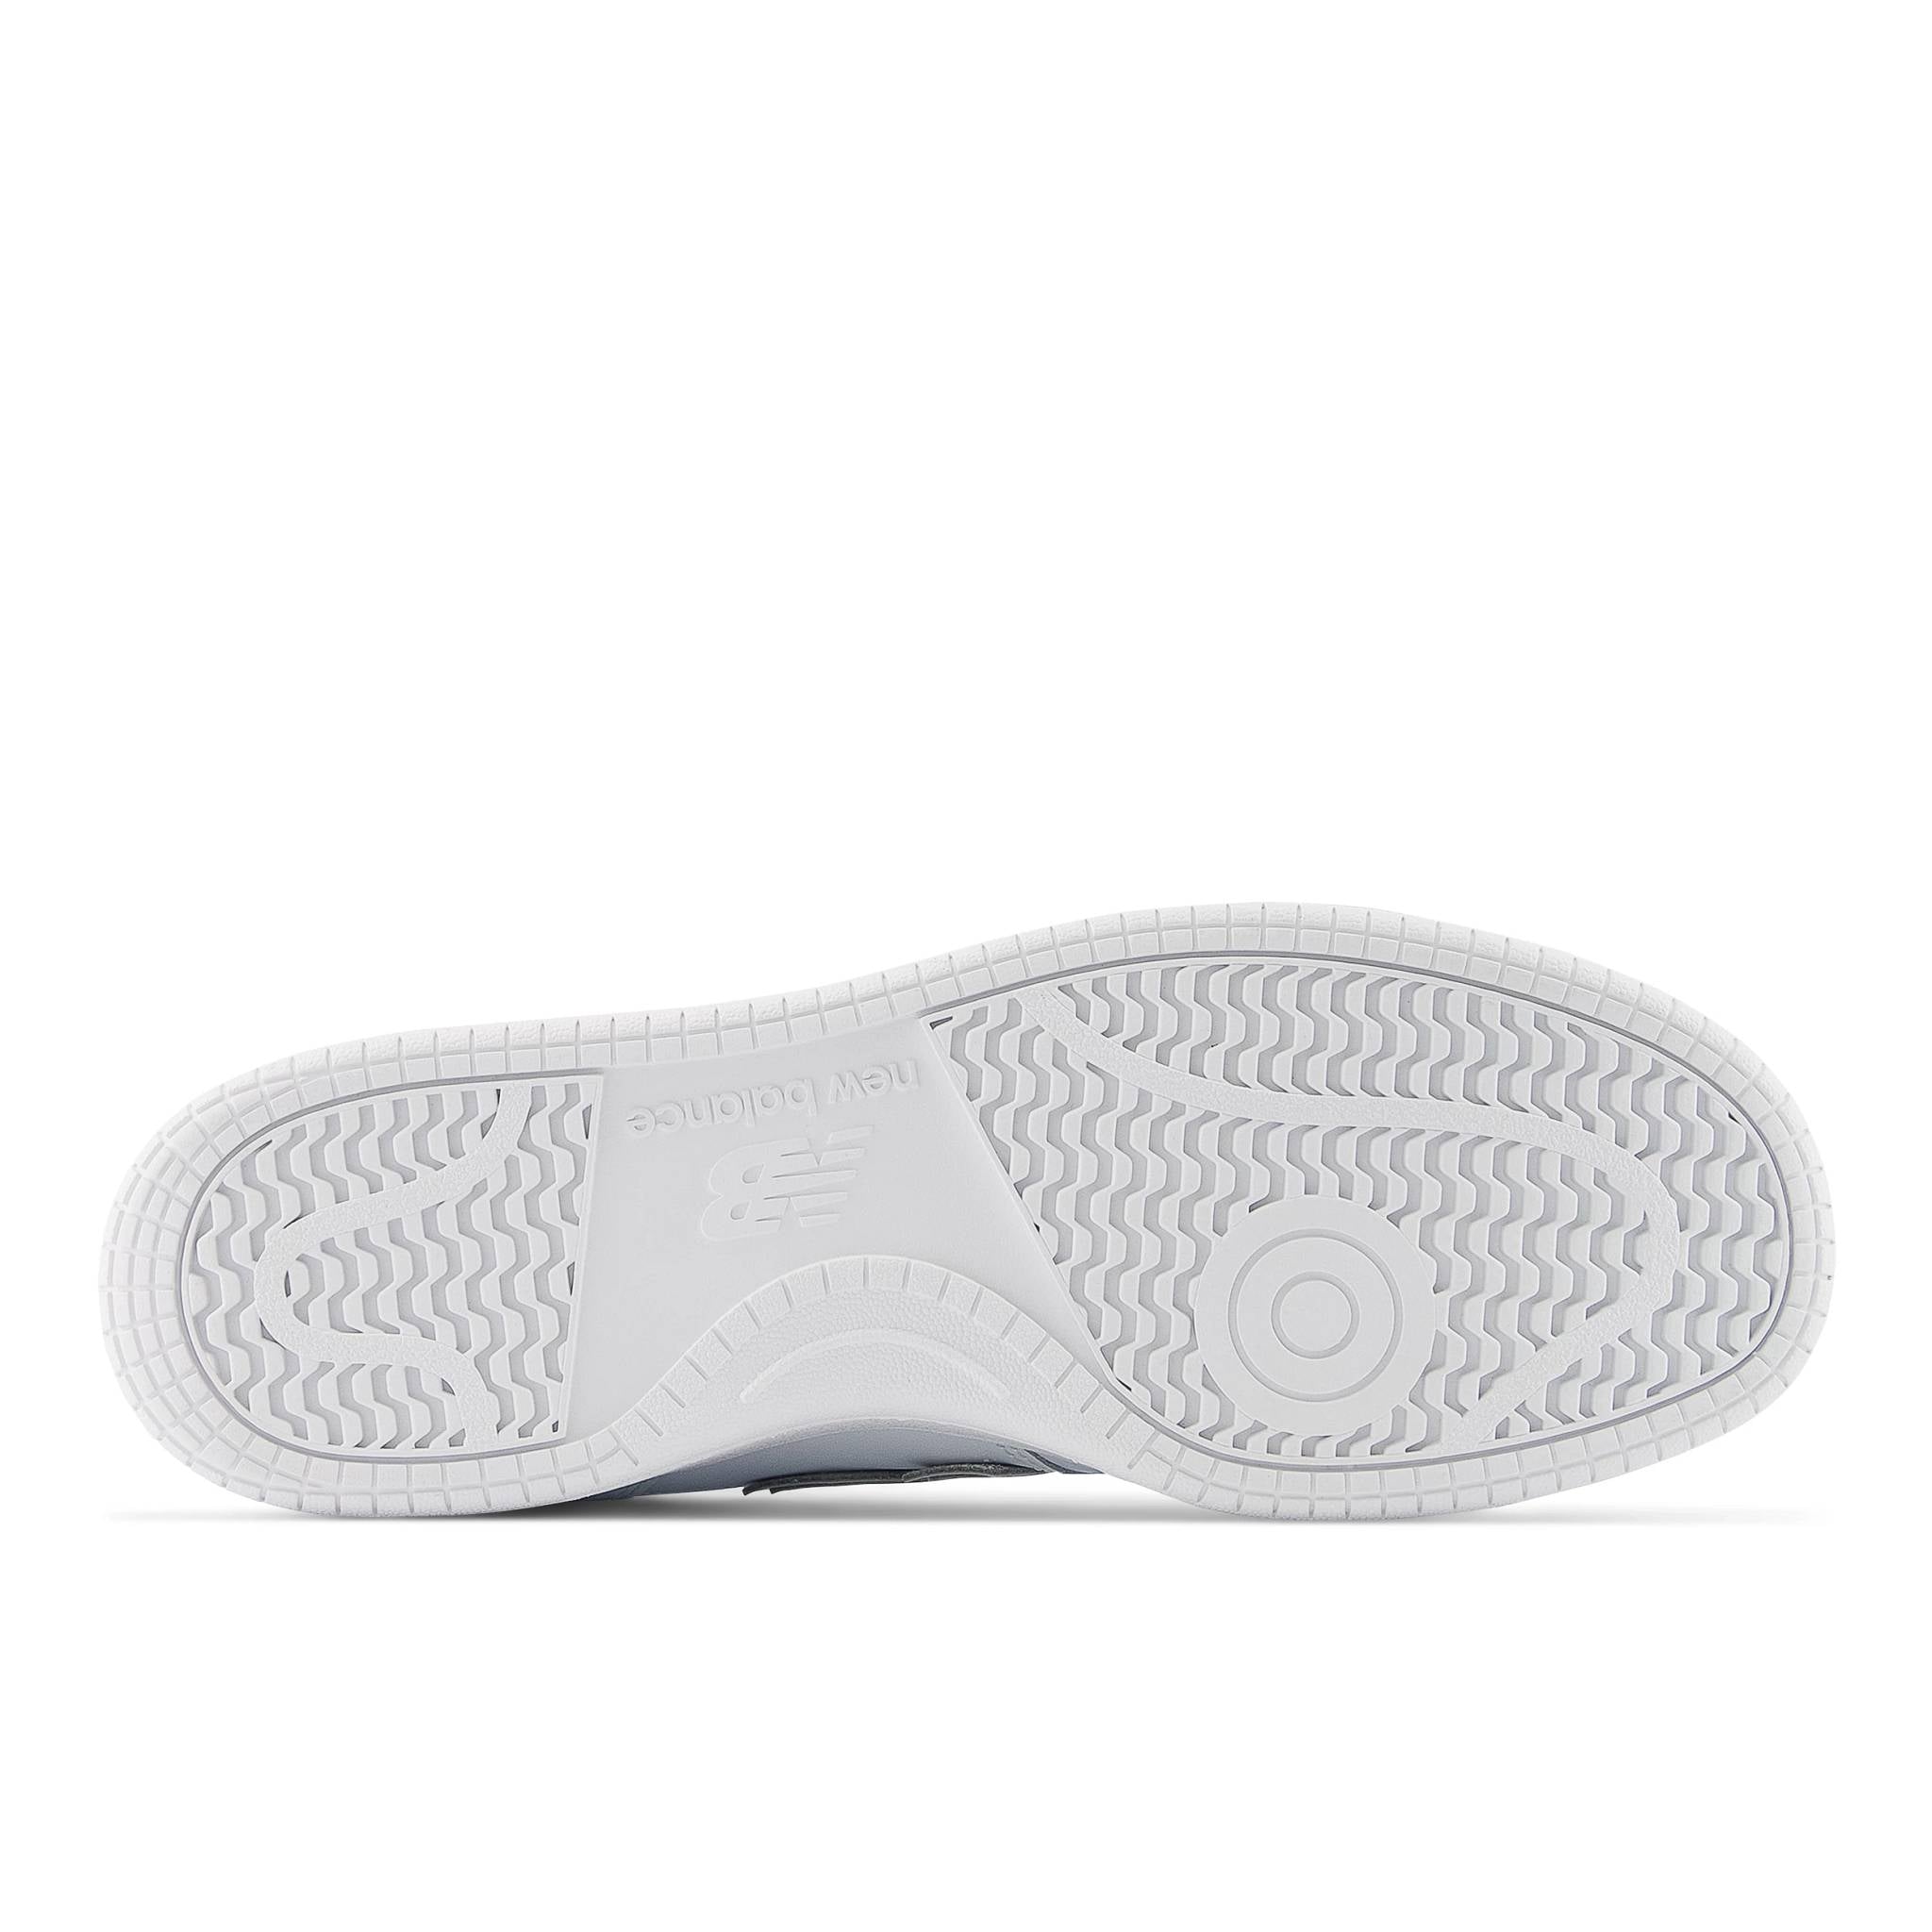 Sneaker NEW BALANCE BB480L3W - White